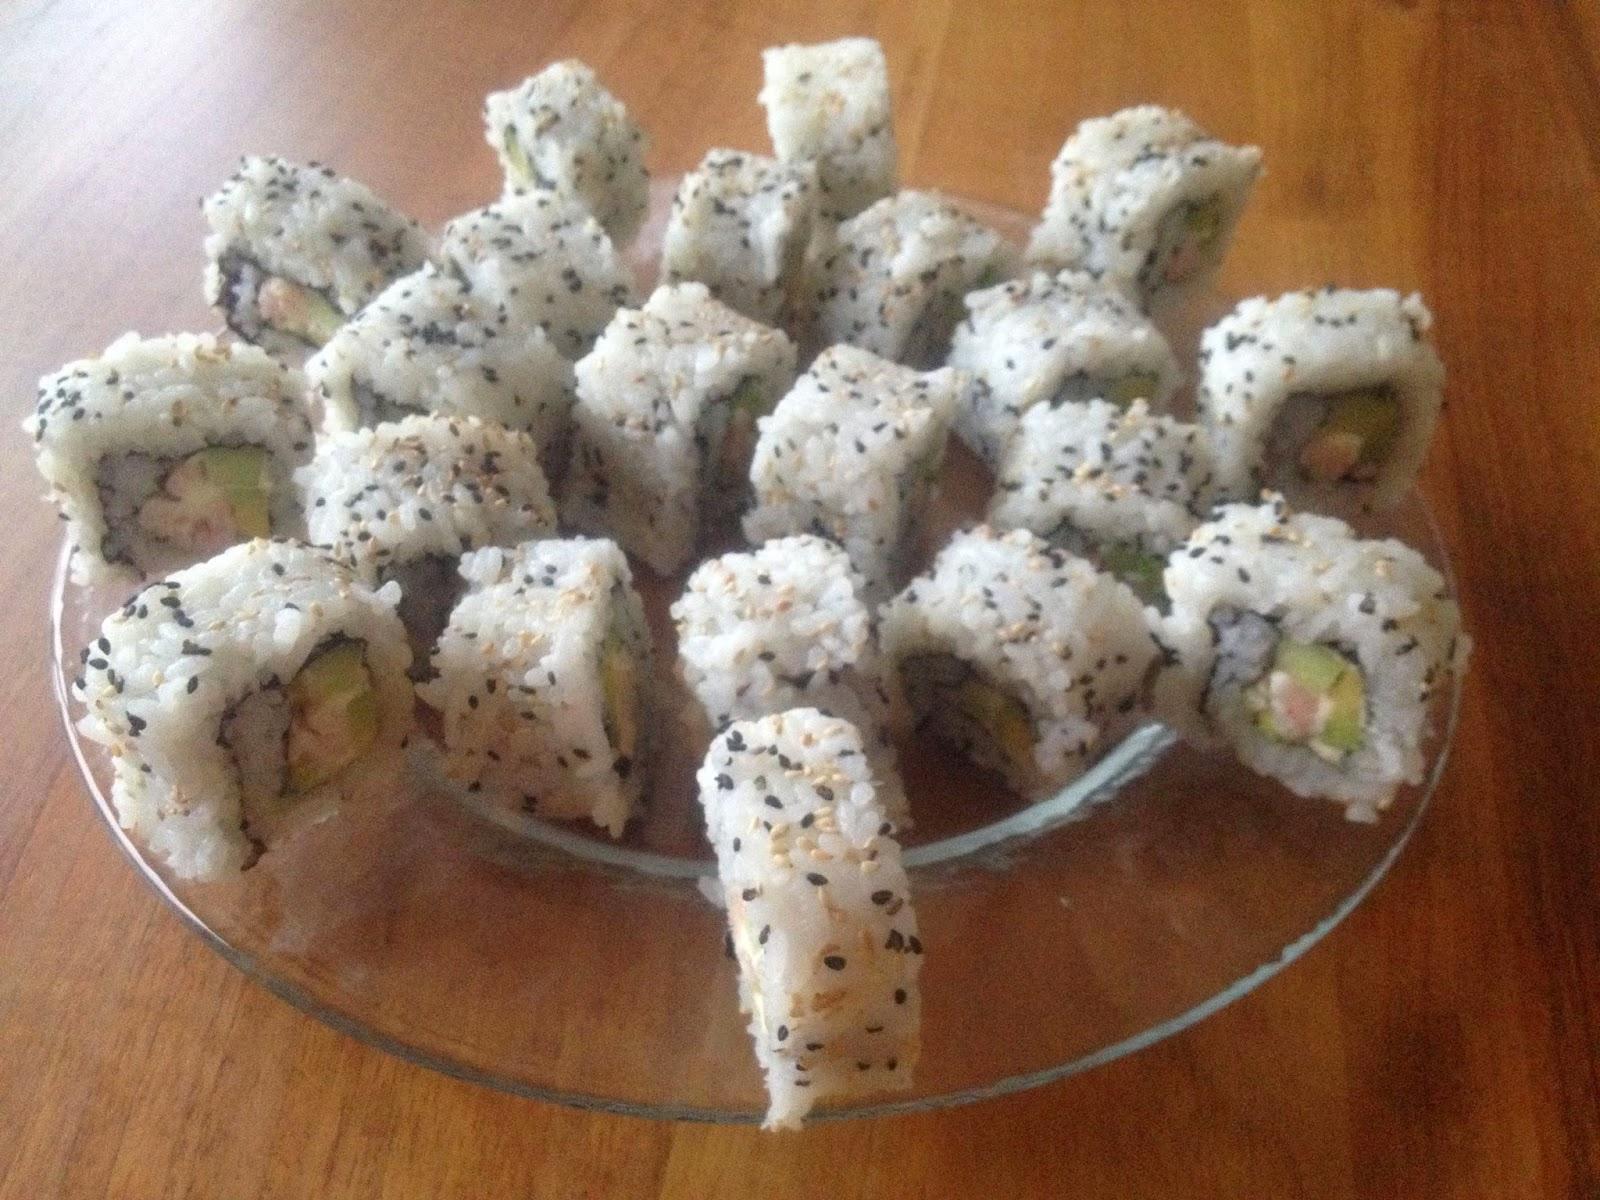 Sushi vegan